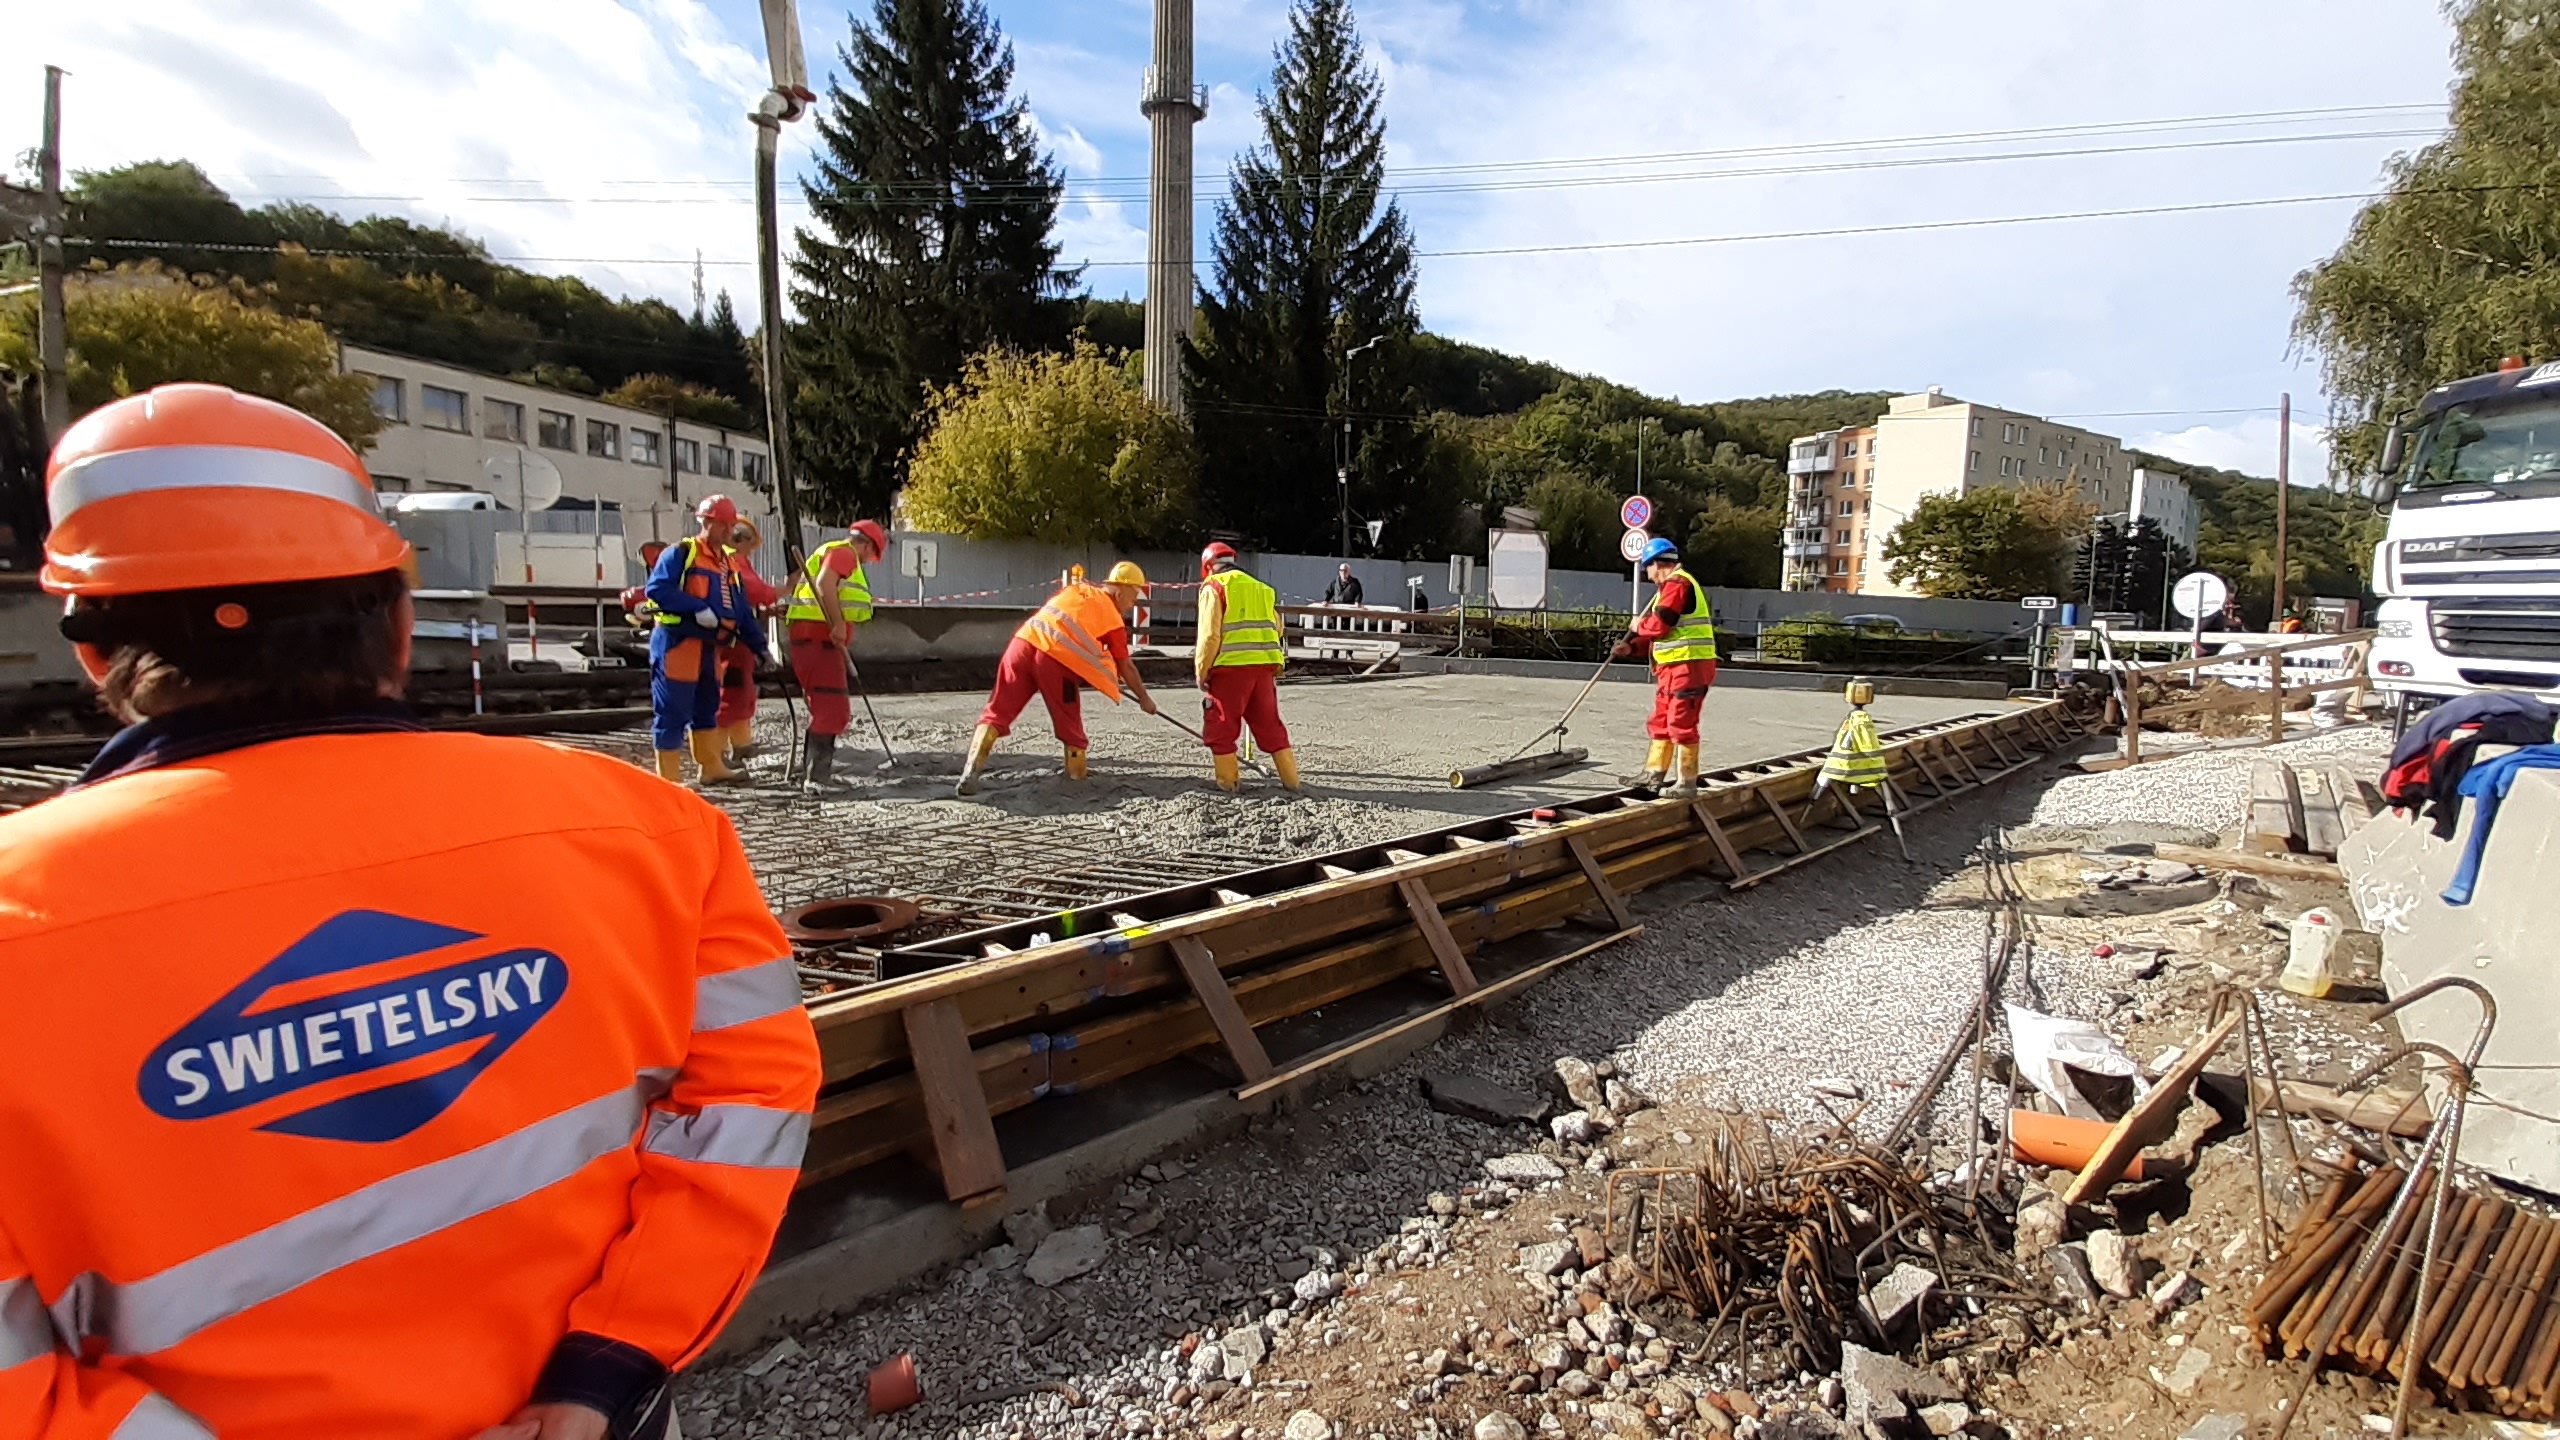 SO-01 Prestavba mostného objektu 516-004 križovanie vodného toku, Trenčianske Teplice - Stavby silnic a mostů